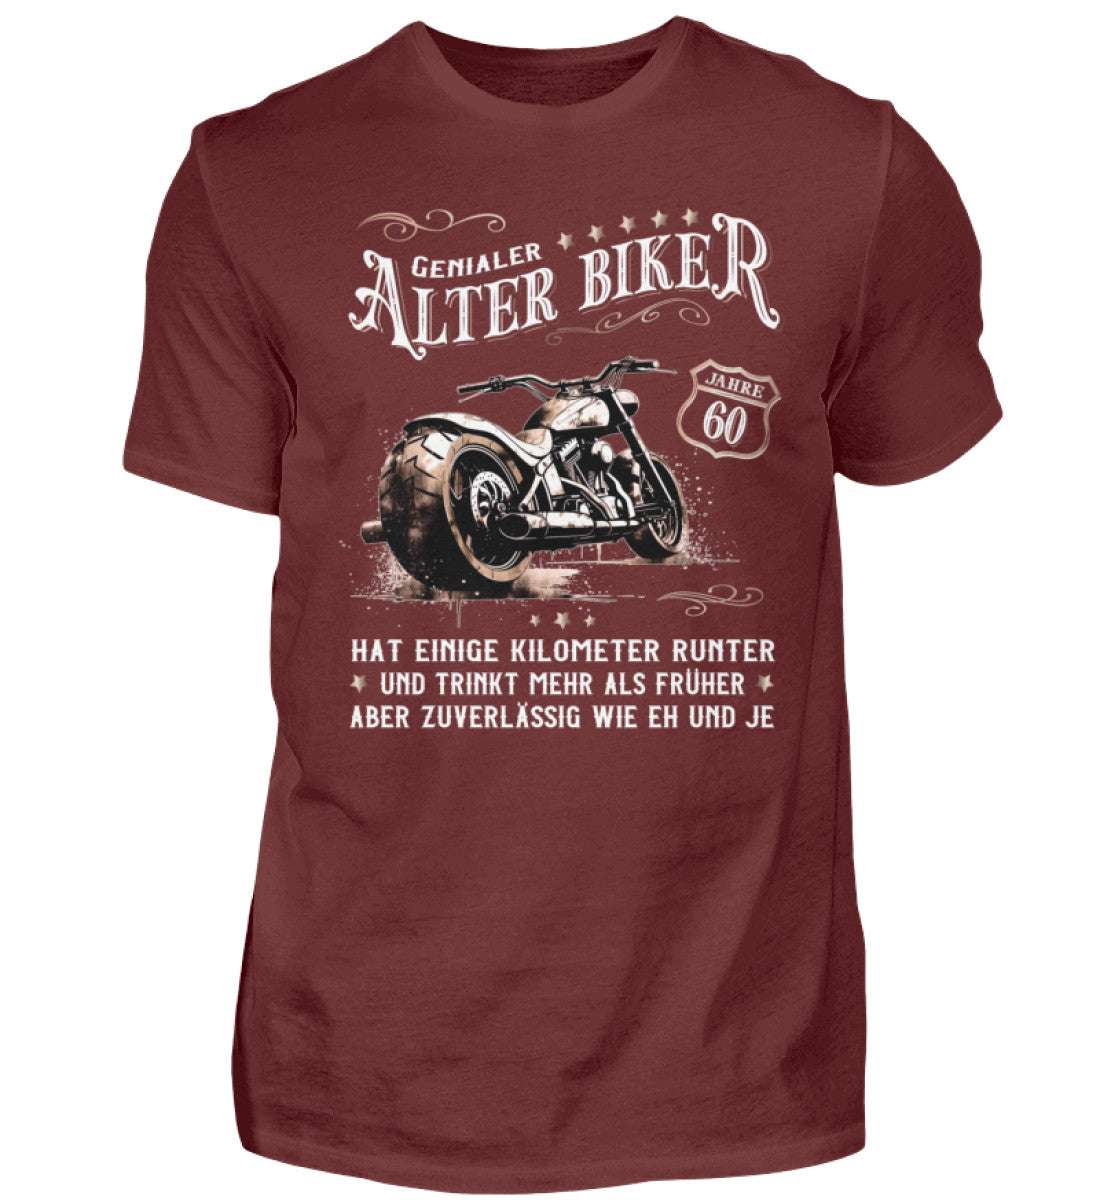 Ein Biker T-Shirt zum Geburtstag für Motorradfahrer von Wingbikers mit dem Aufdruck, Alter Biker - 60 Jahre - Einige Kilometer runter, trinkt mehr - aber zuverlässig wie eh und je - in weinrot.